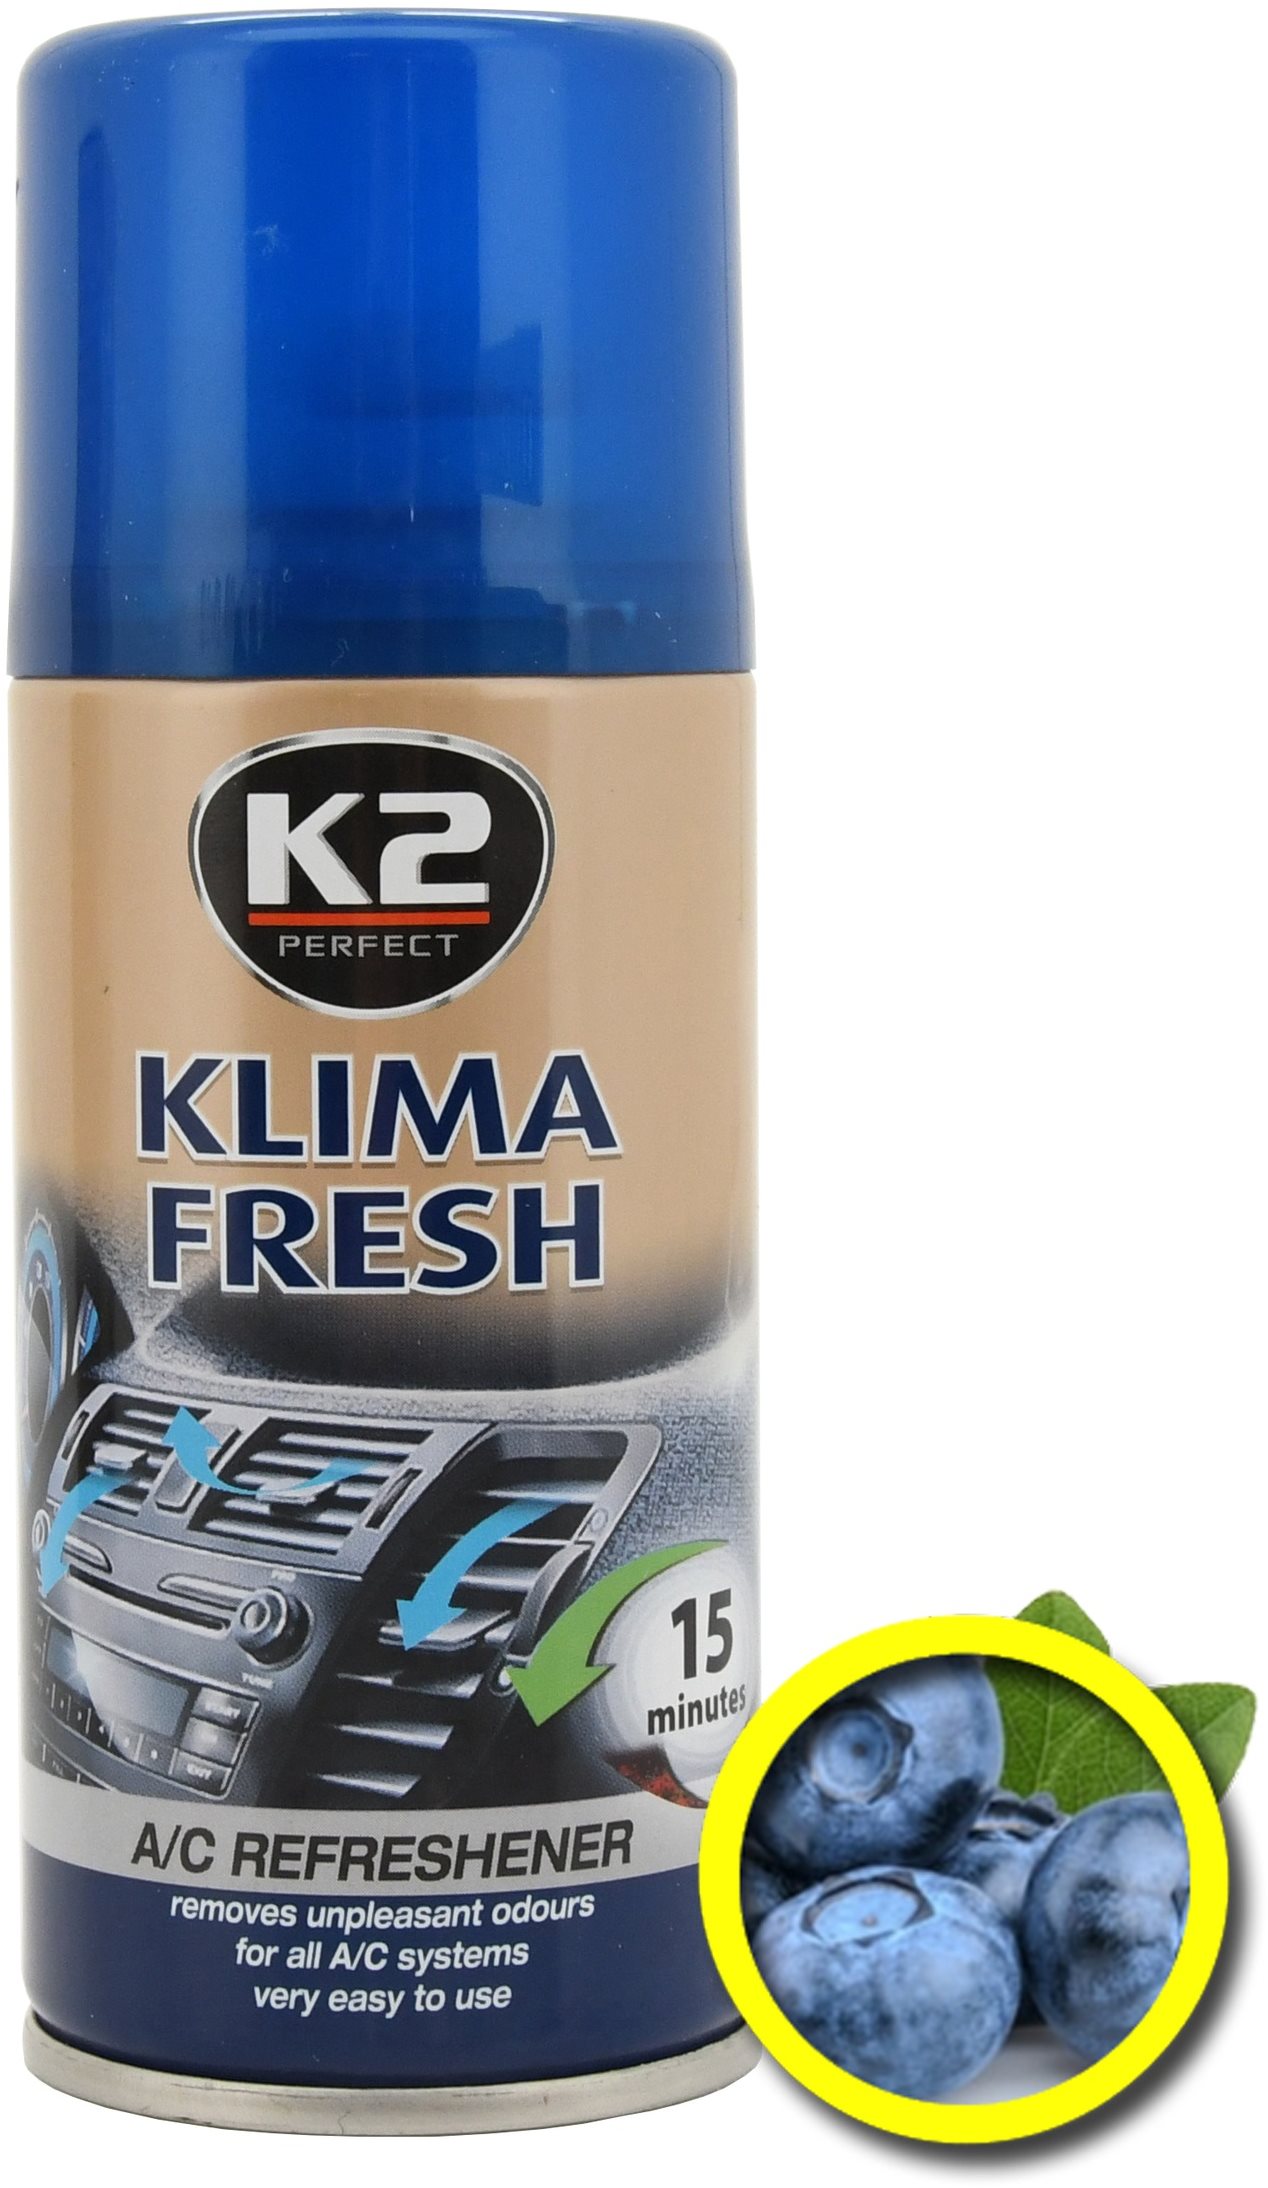 K2 KLIMA FRESH BLUEBERRY 150 ml